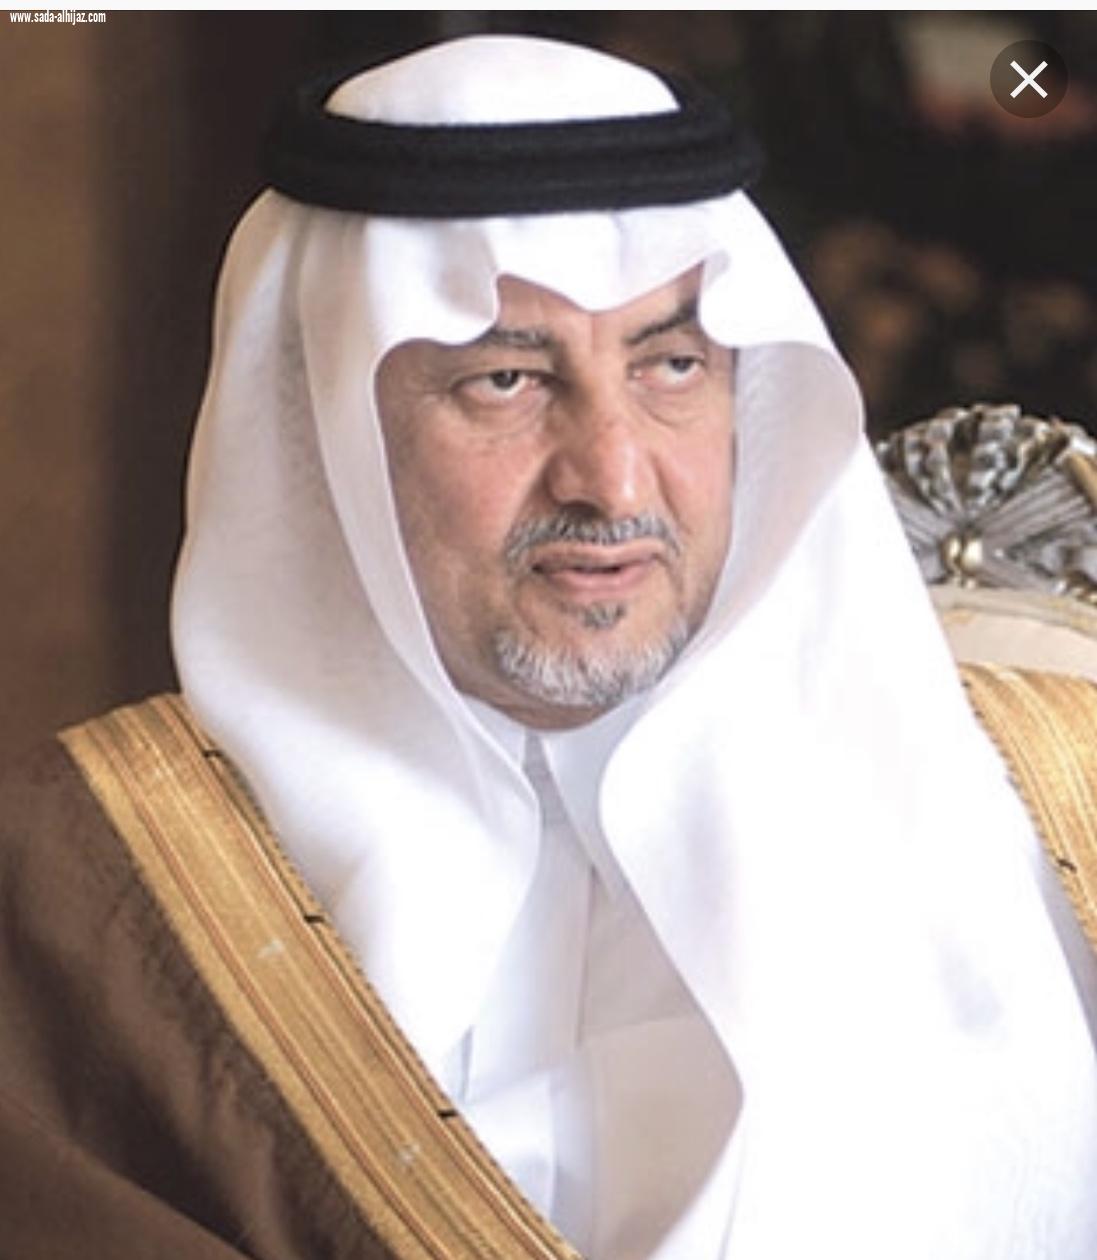 الأمير خالد الفيصل يفتتح منتدى مكة الكرمة الإقتصادي لعام (2019)اليوم